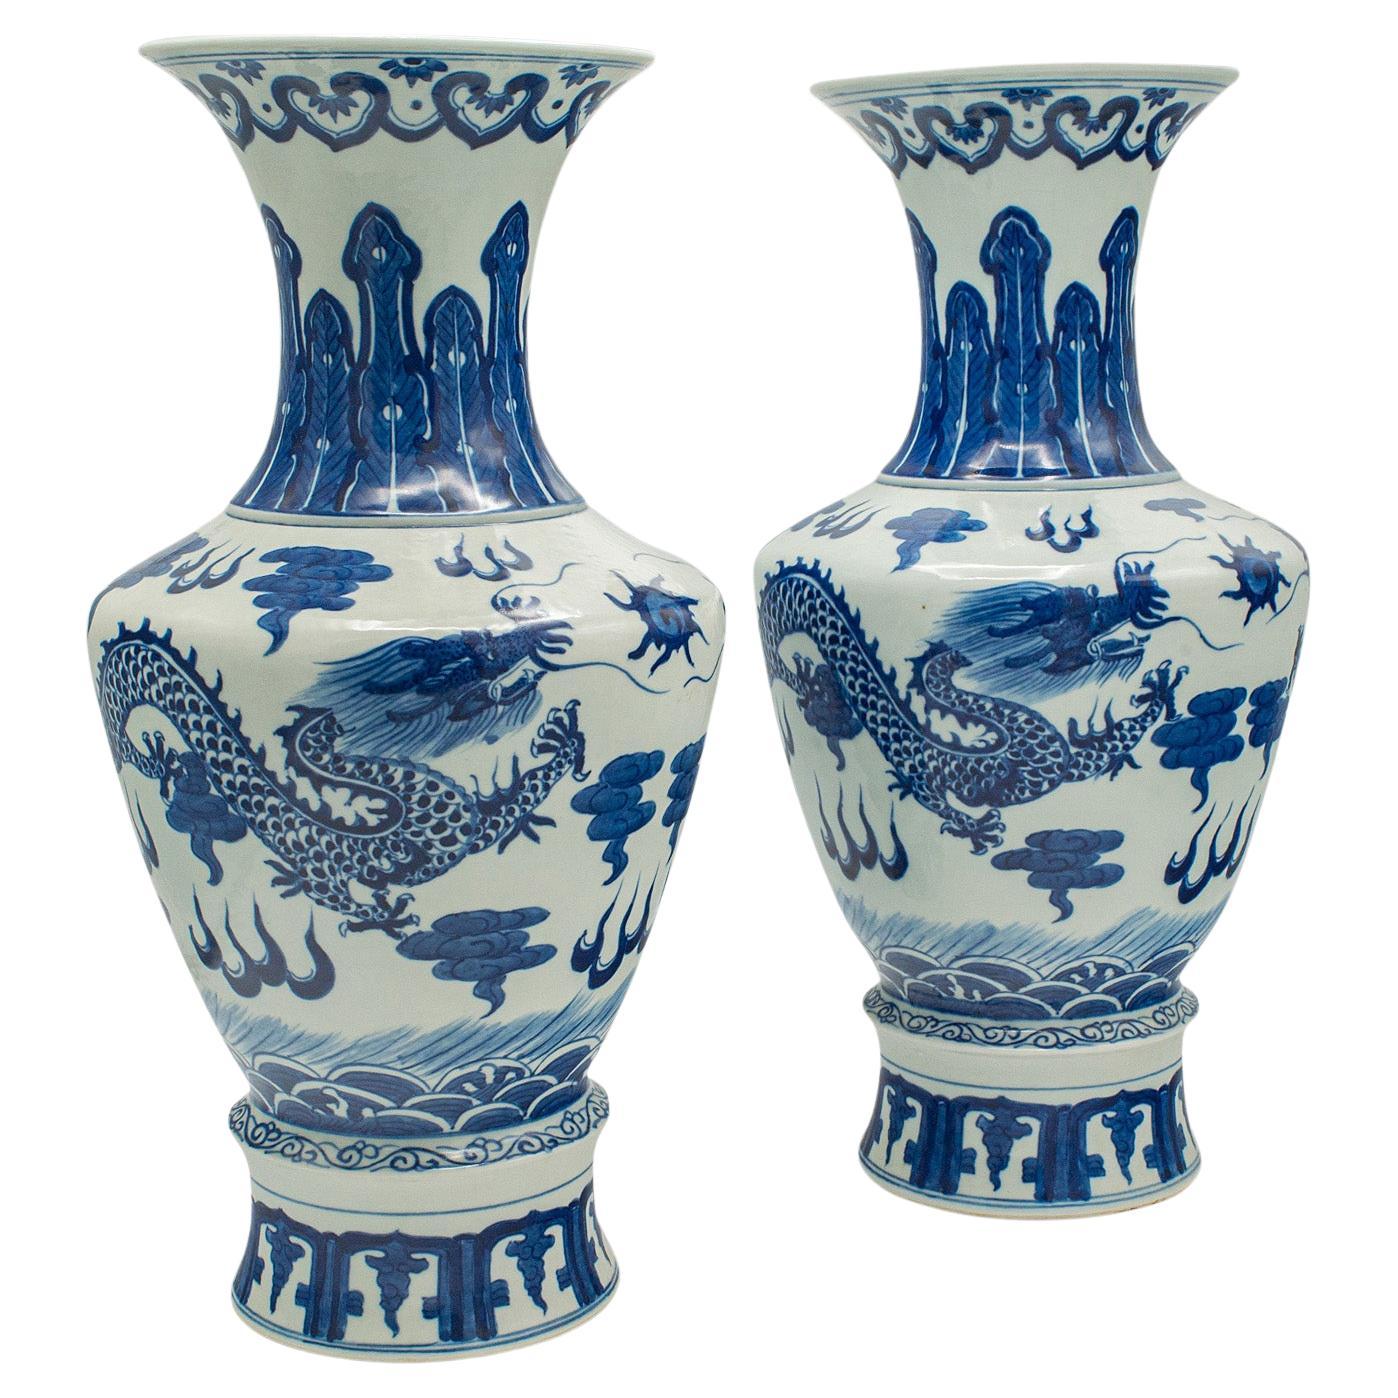 Paire de vases balustres vintage chinois, céramique, décoration, urne, art déco